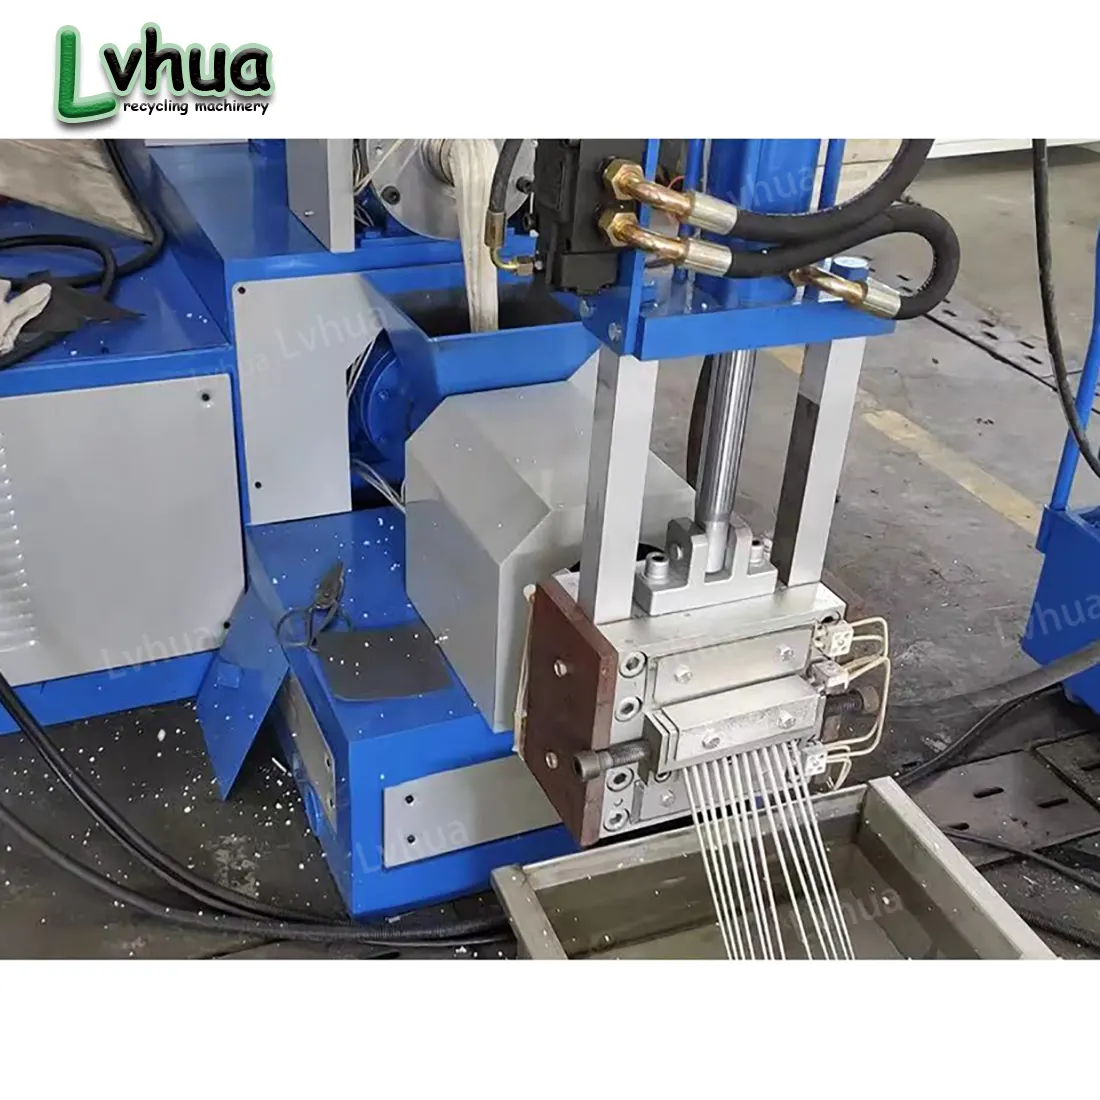 Lvhua professionelle eps xps schaumstoffrecyclingmaschine pelletiermaschine mit automatischem vorschubsystem